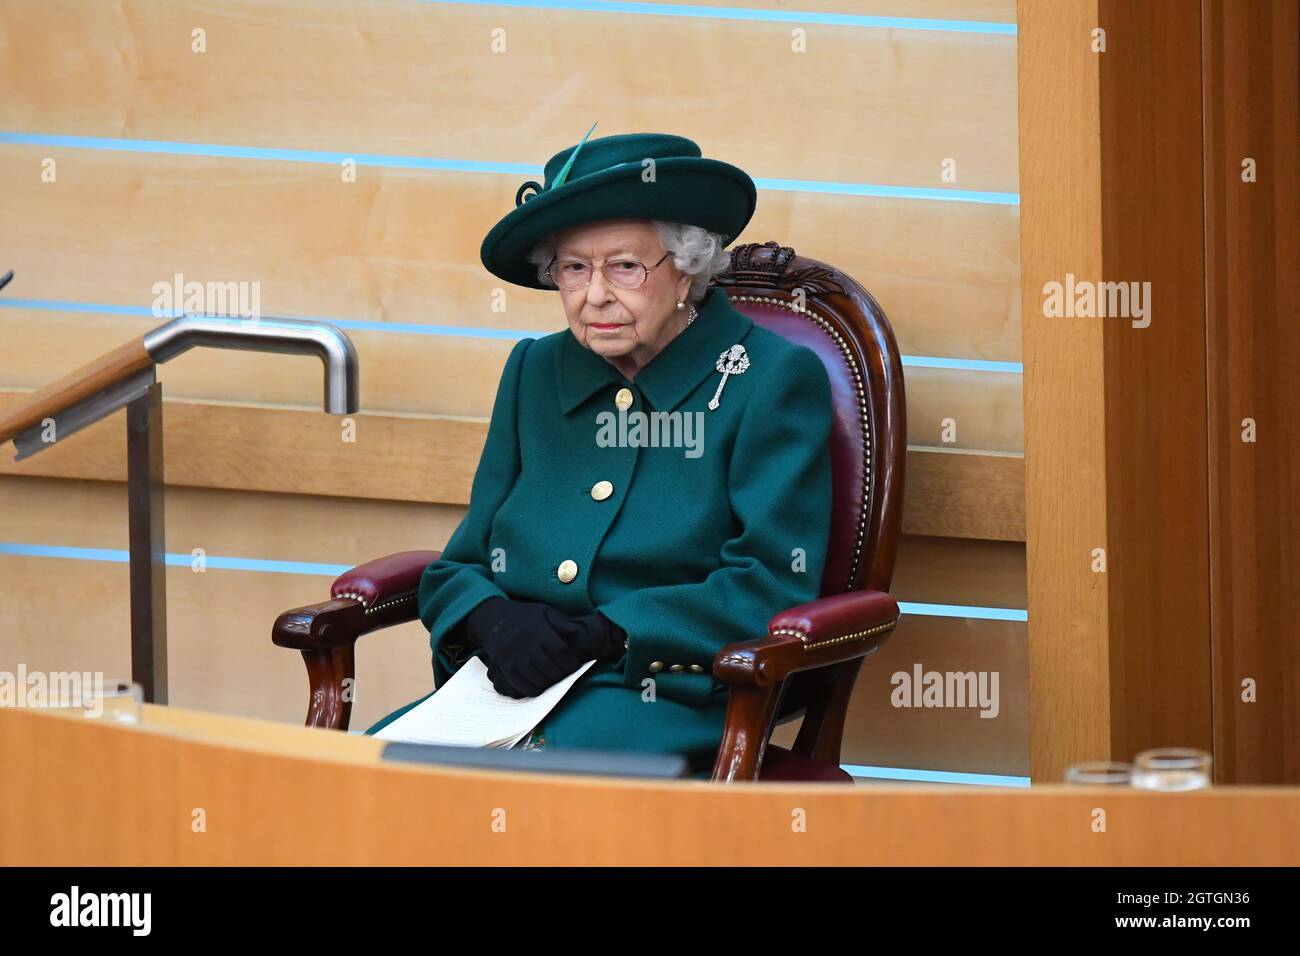 Königin Elizabeth II. Bereitet sich darauf vor, eine Rede in der Debattierkammer des schottischen Parlaments in Edinburgh zum offiziellen Beginn der sechsten Parlamentssitzung zu halten. Bilddatum: Samstag, 2. Oktober 2021. Stockfoto